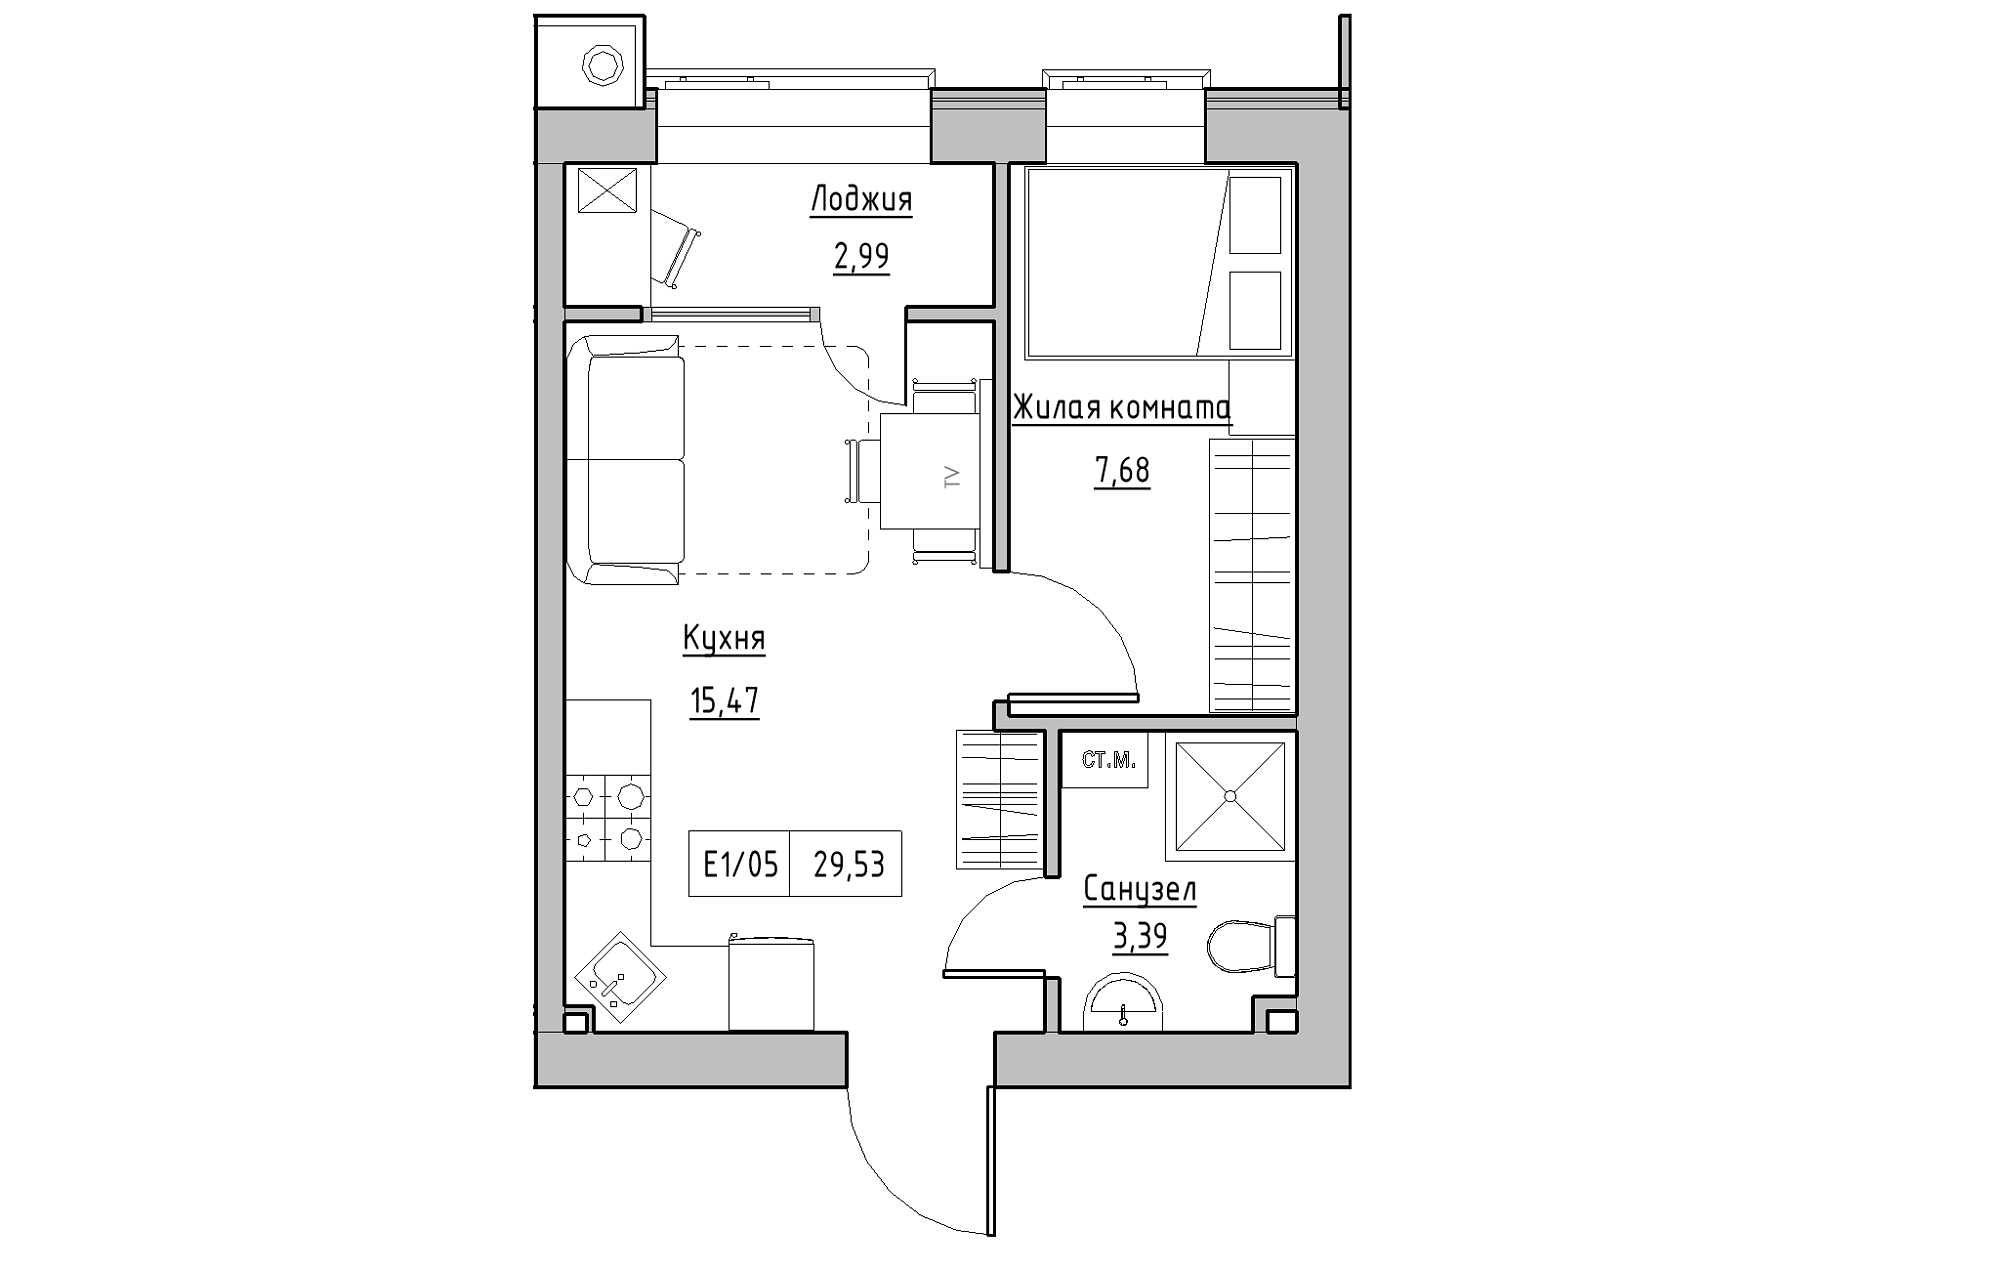 Планировка 1-к квартира площей 29.53м2, KS-013-02/0008.